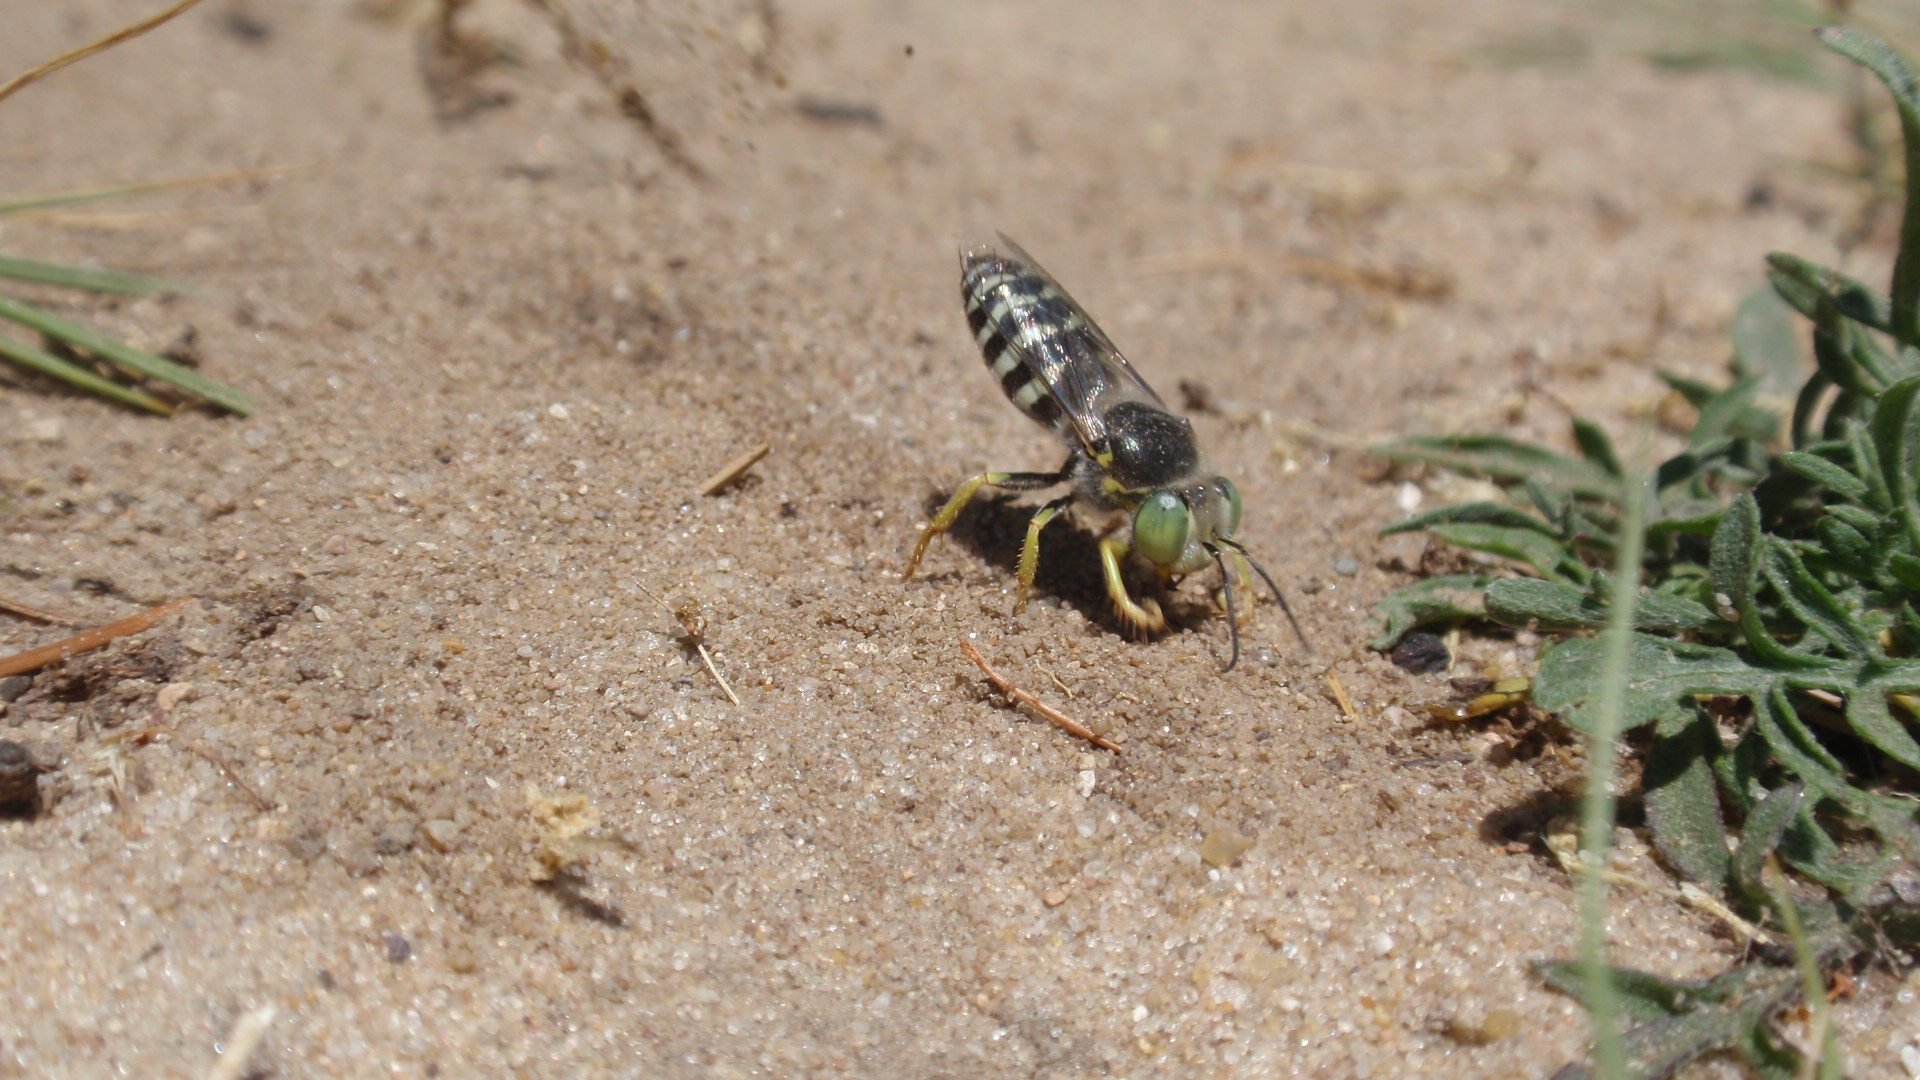 Sand wasps